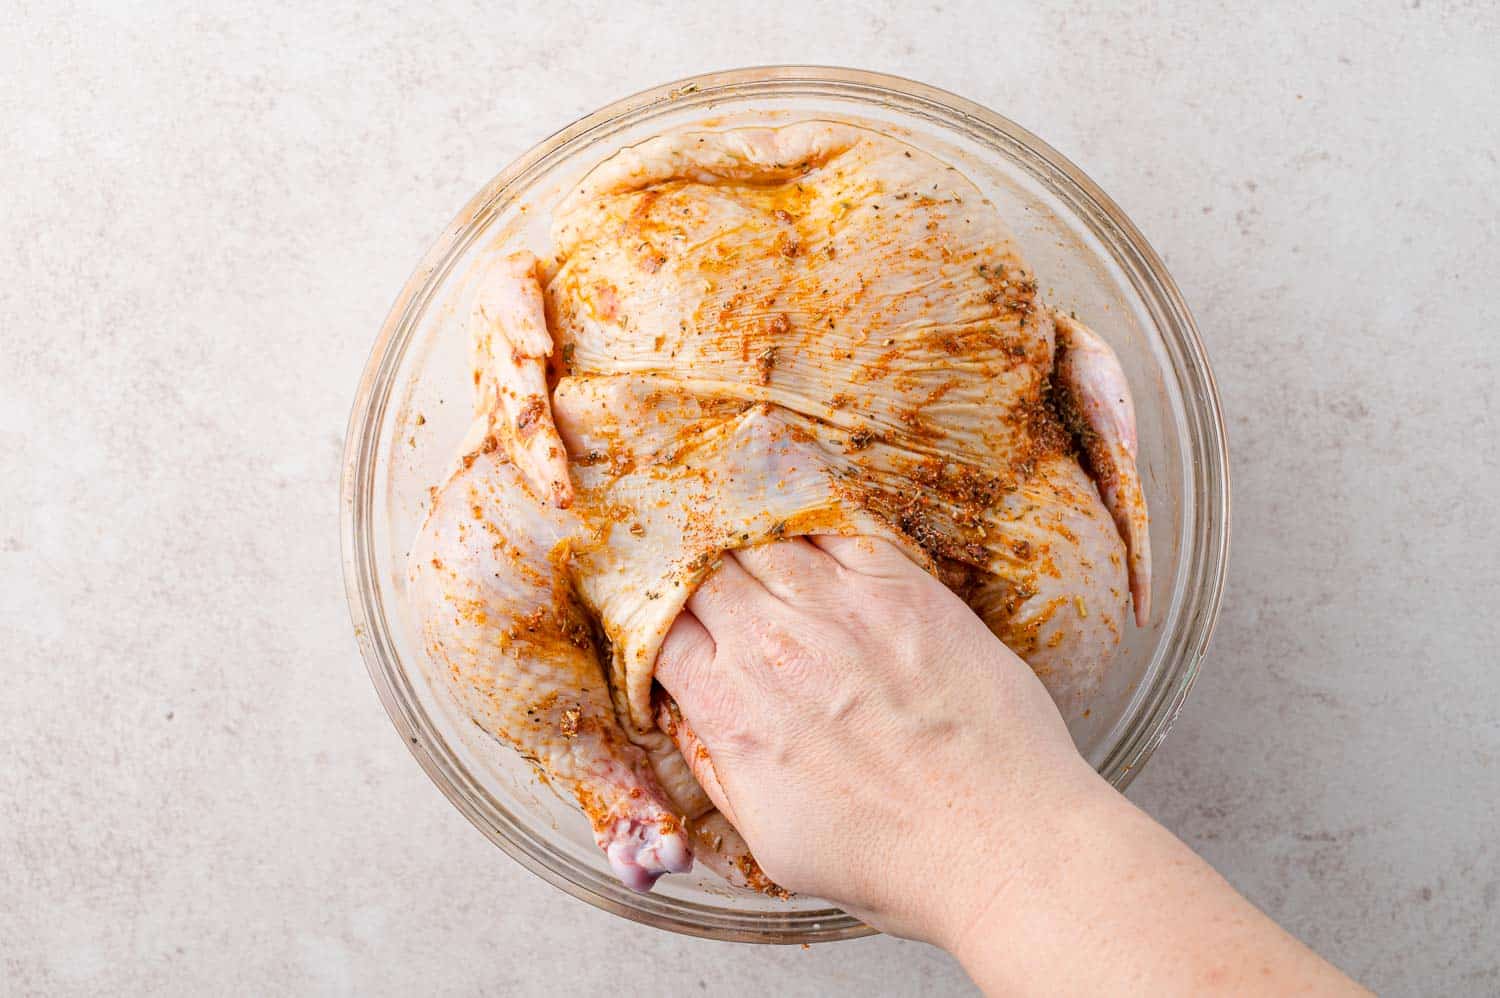 Spice rub being added under skin of chicken.